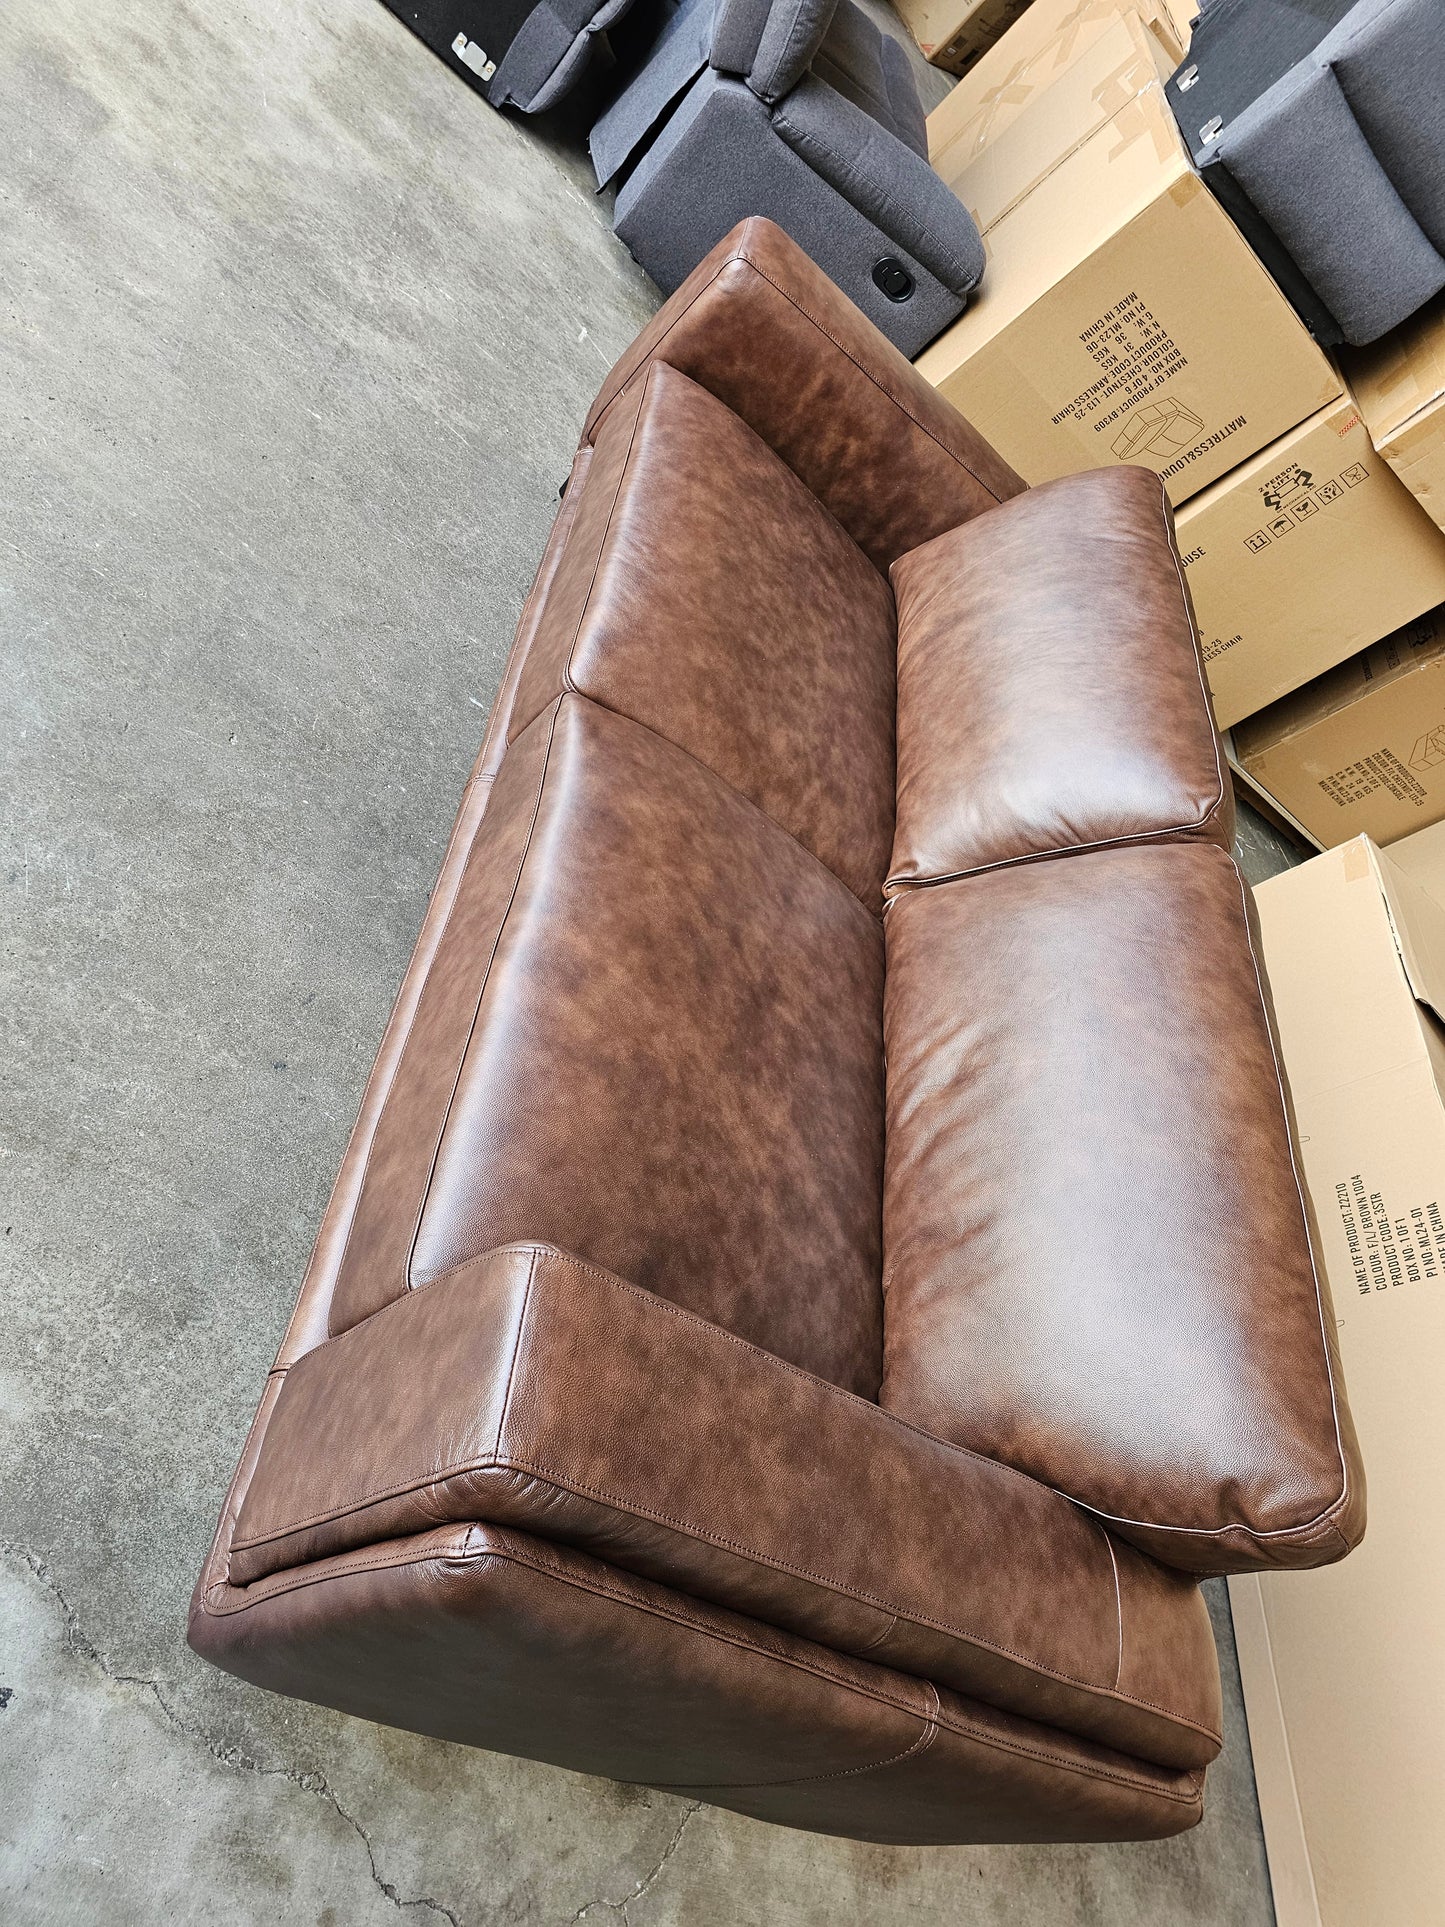 Danise Leather Sofa Lounge